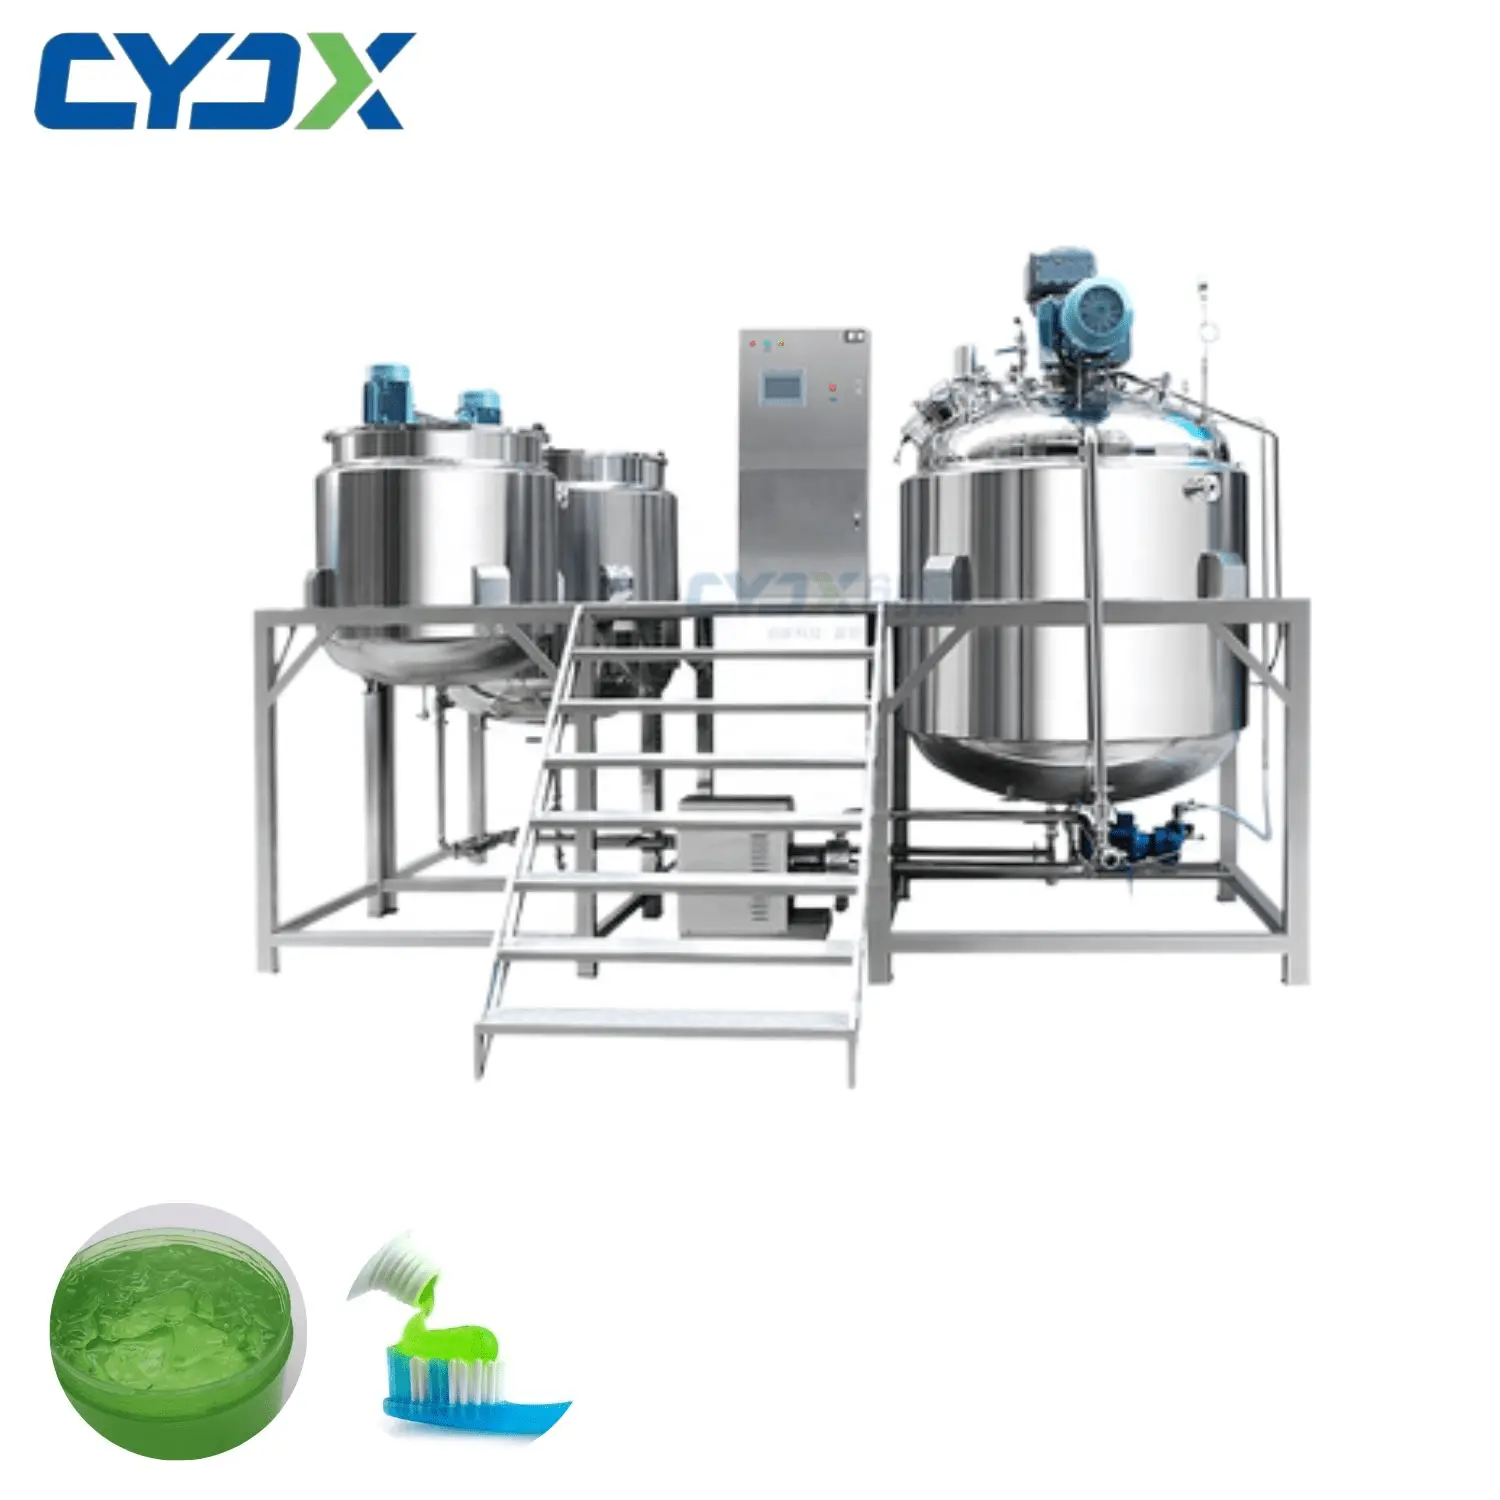 Cyjx Trung Quốc Nhà cung cấp máy trộn kem chân không homogenizer thiết bị trộn